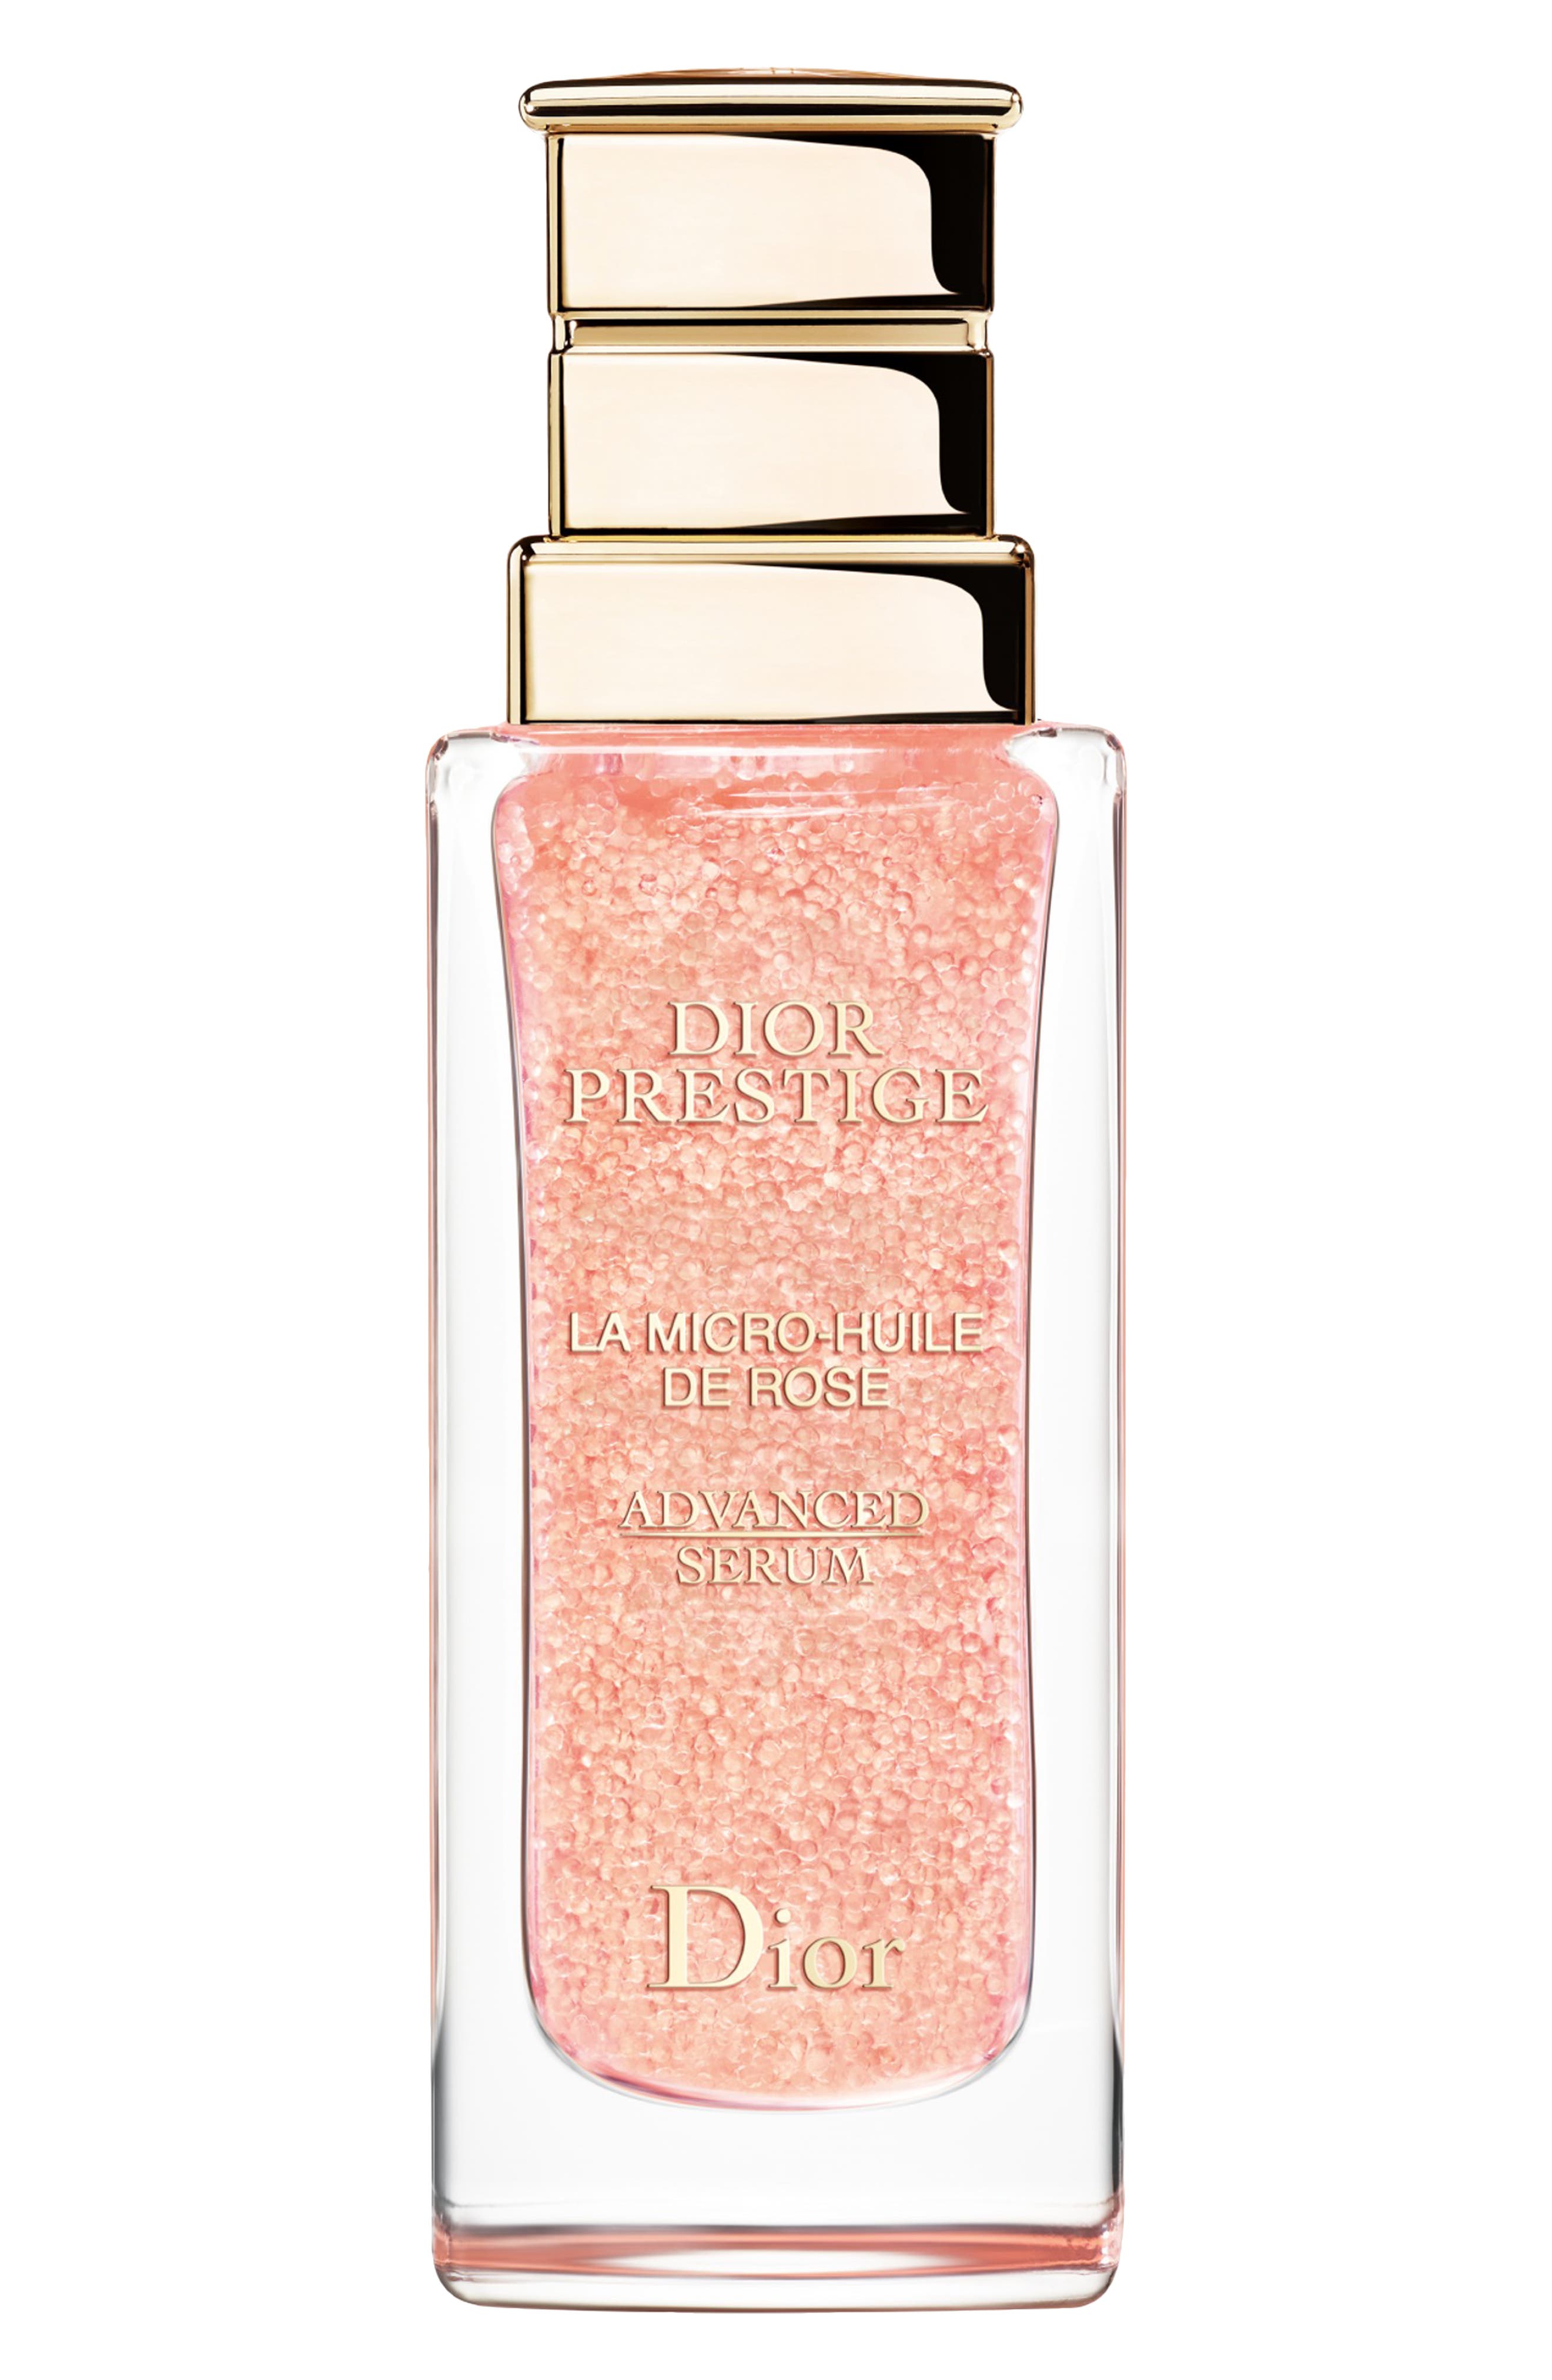 Dior Prestige La Micro-Huile de Rose 